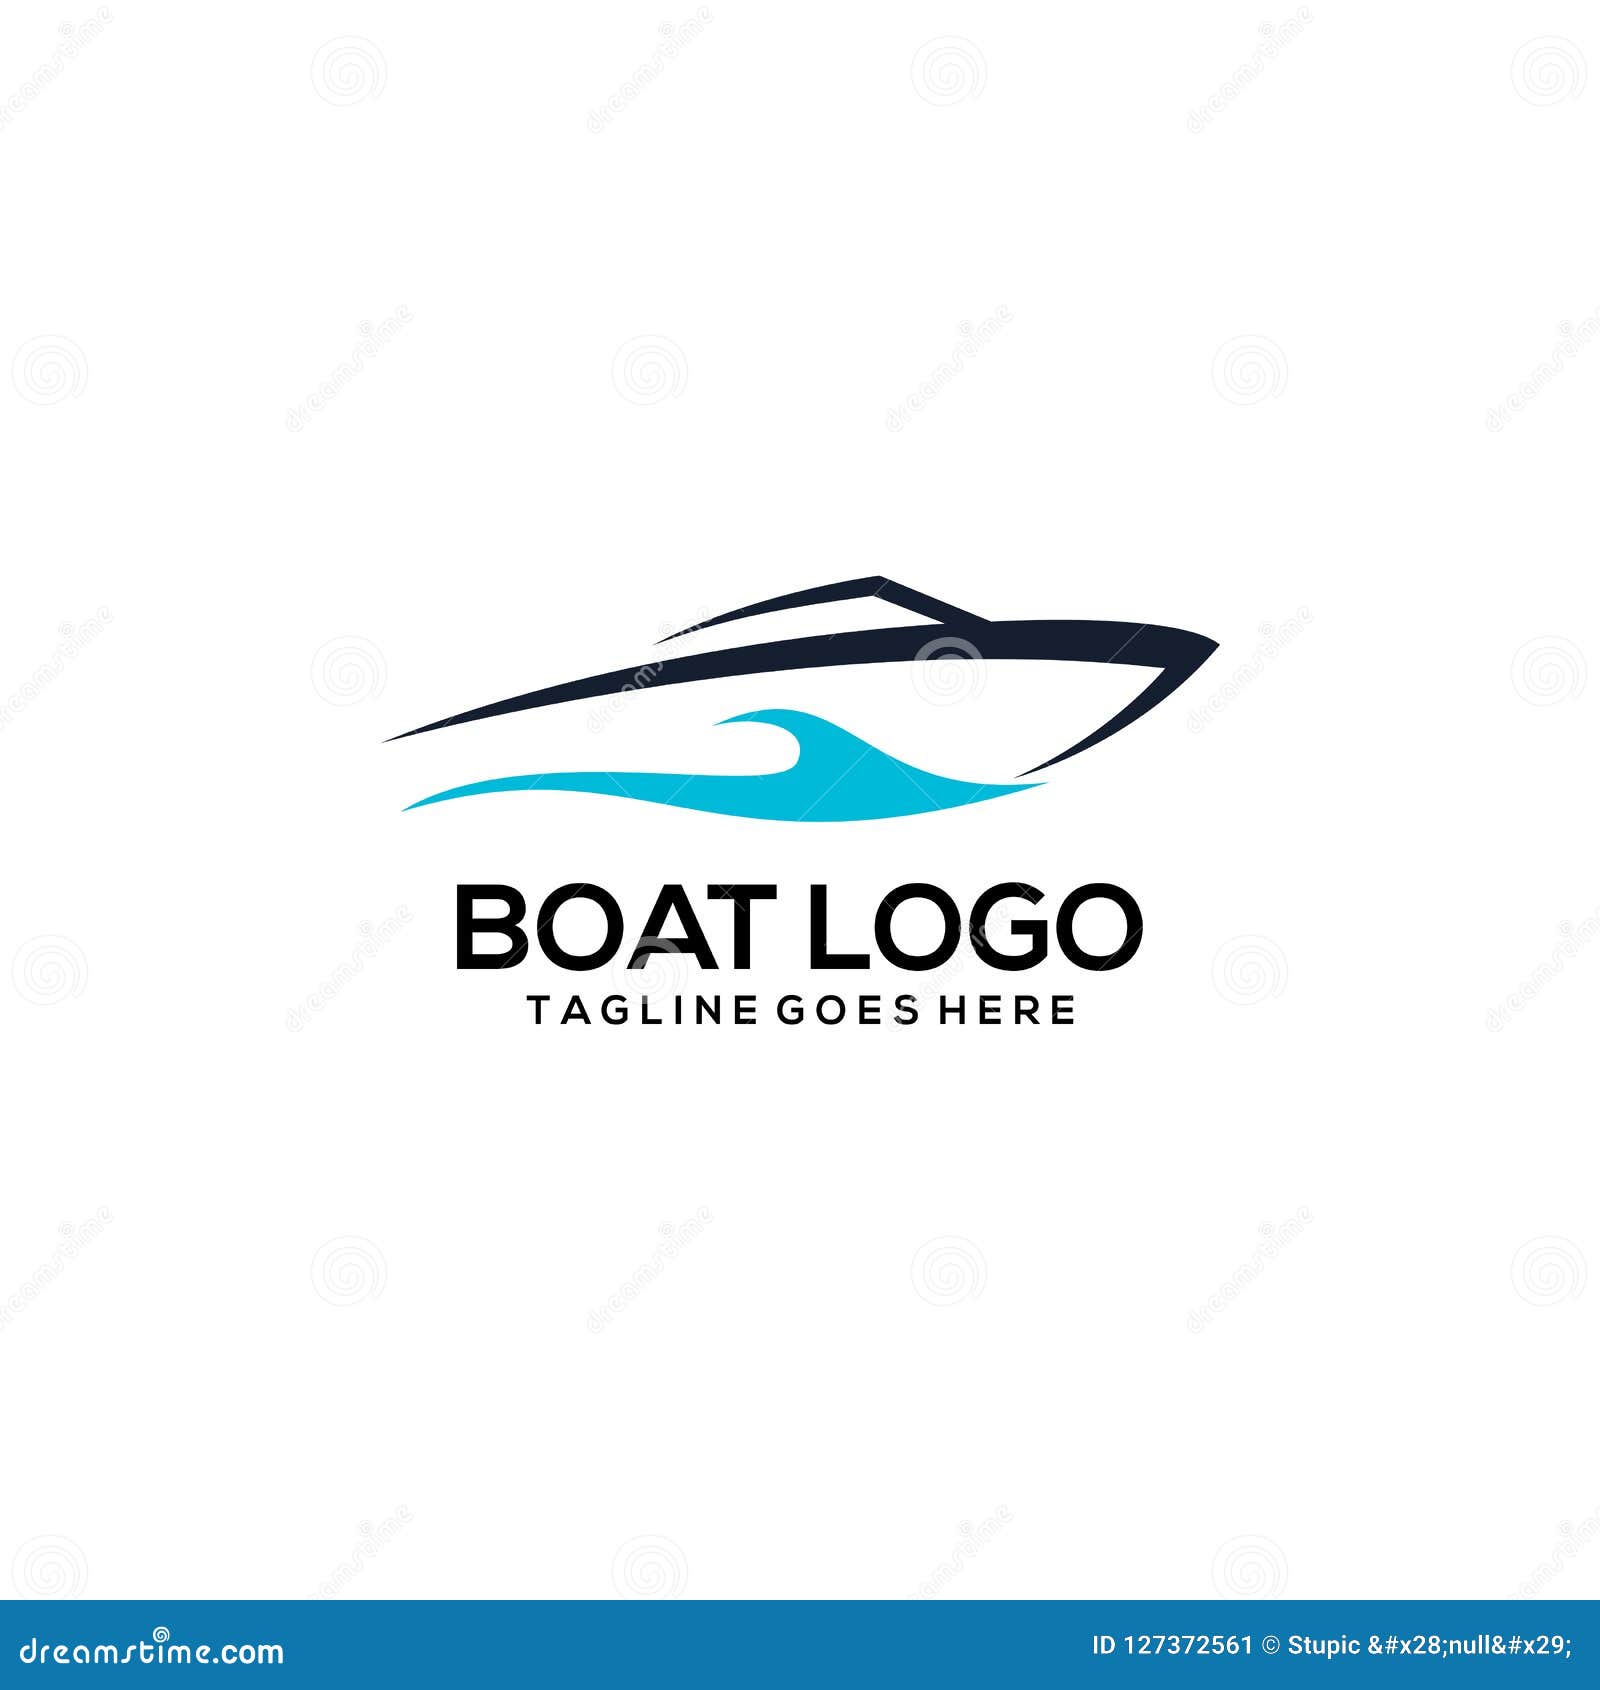 creative boat logo design vector art logo stock vector